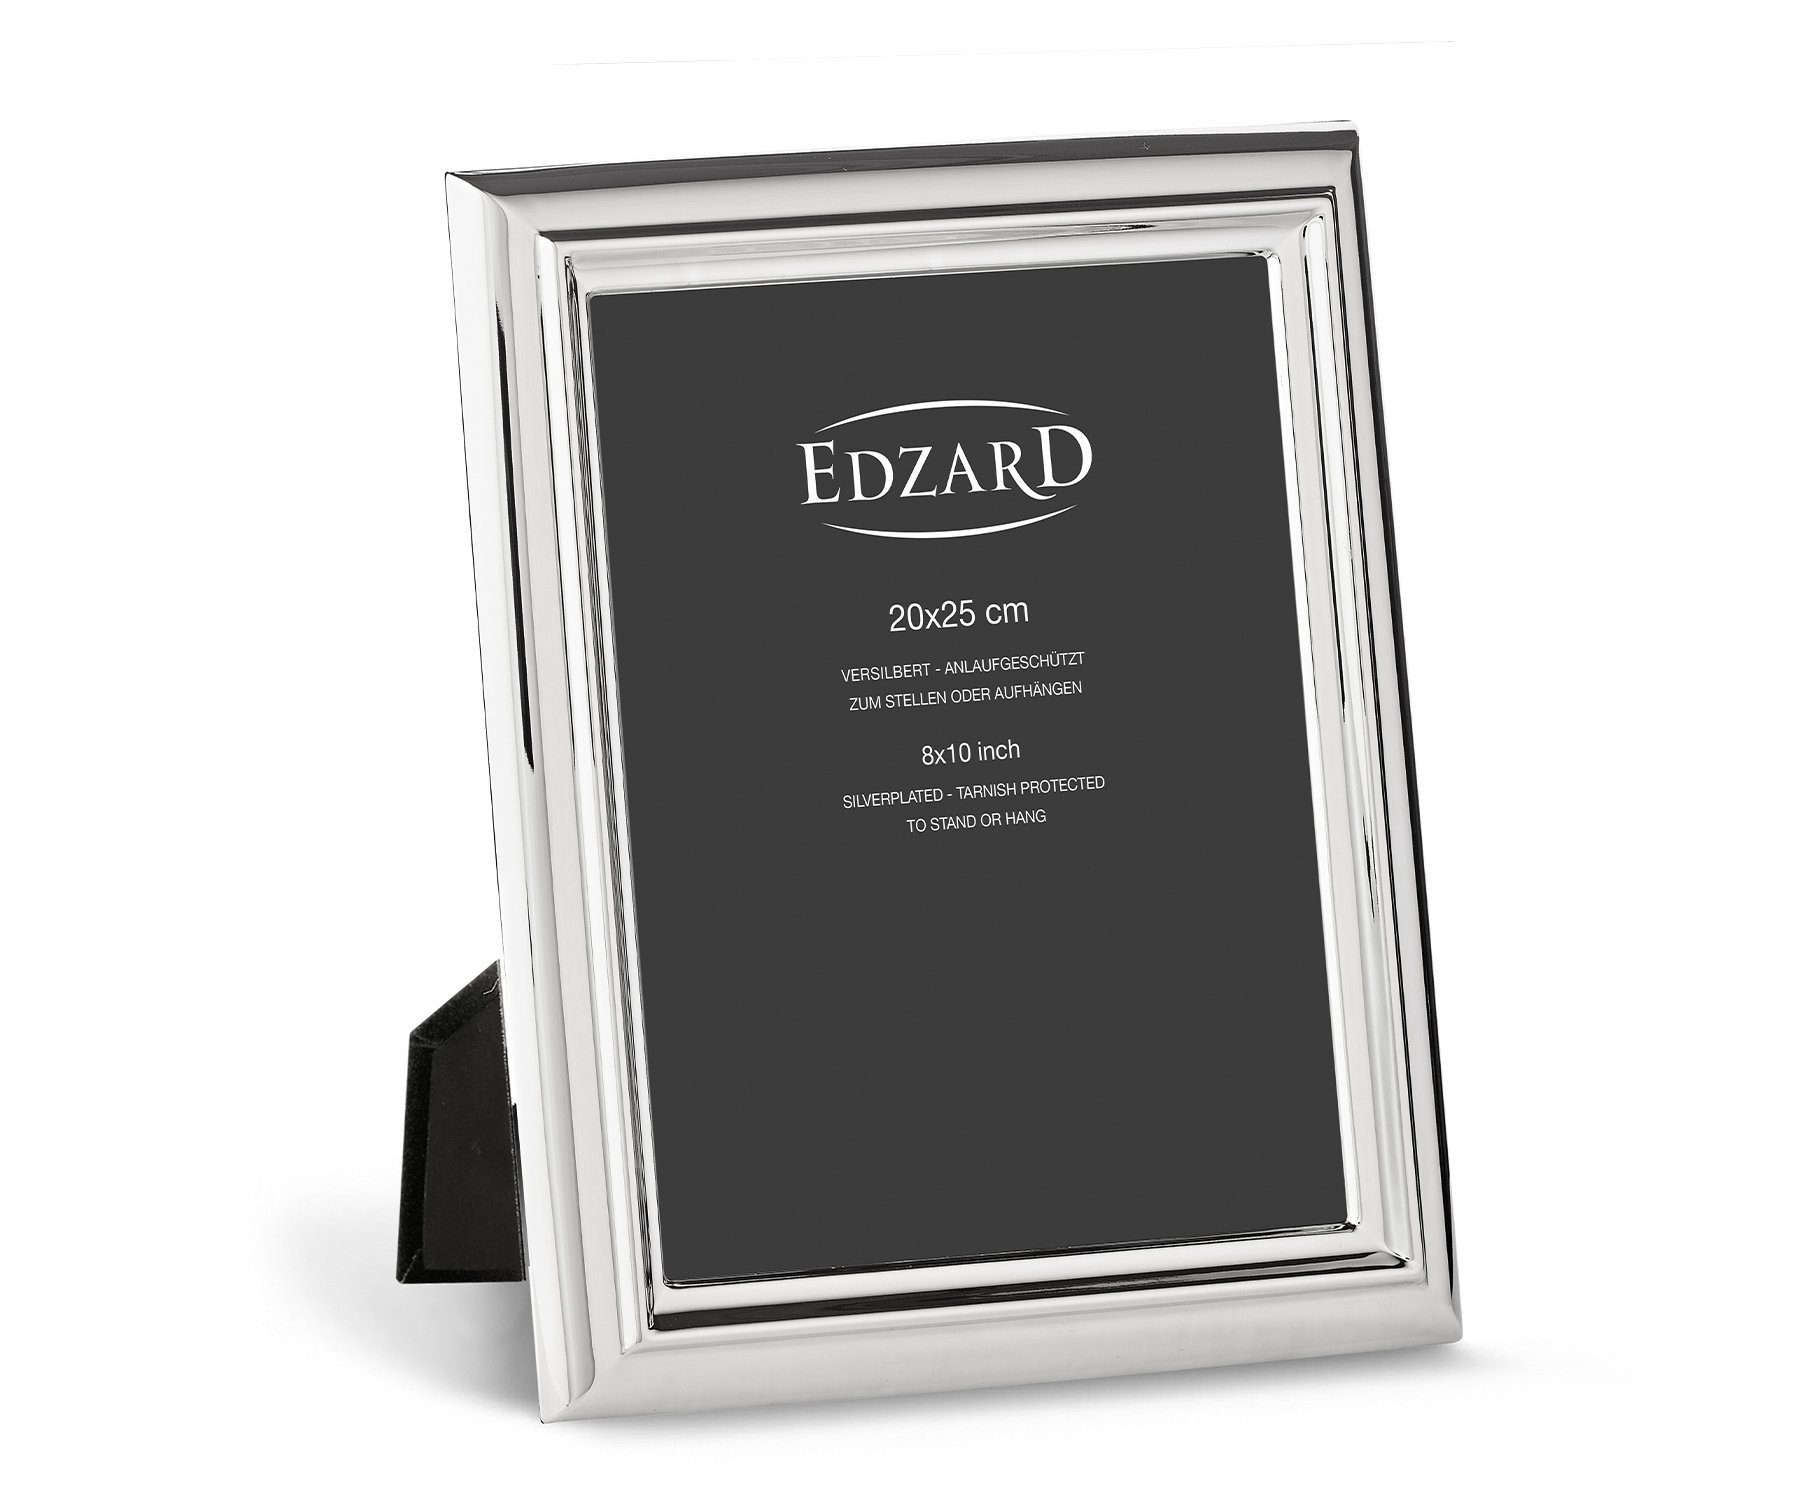 EDZARD Bilderrahmen Florenz, versilbert und anlaufgeschützt, für 20x25 cm Bilder – Fotorahmen | Einzelrahmen